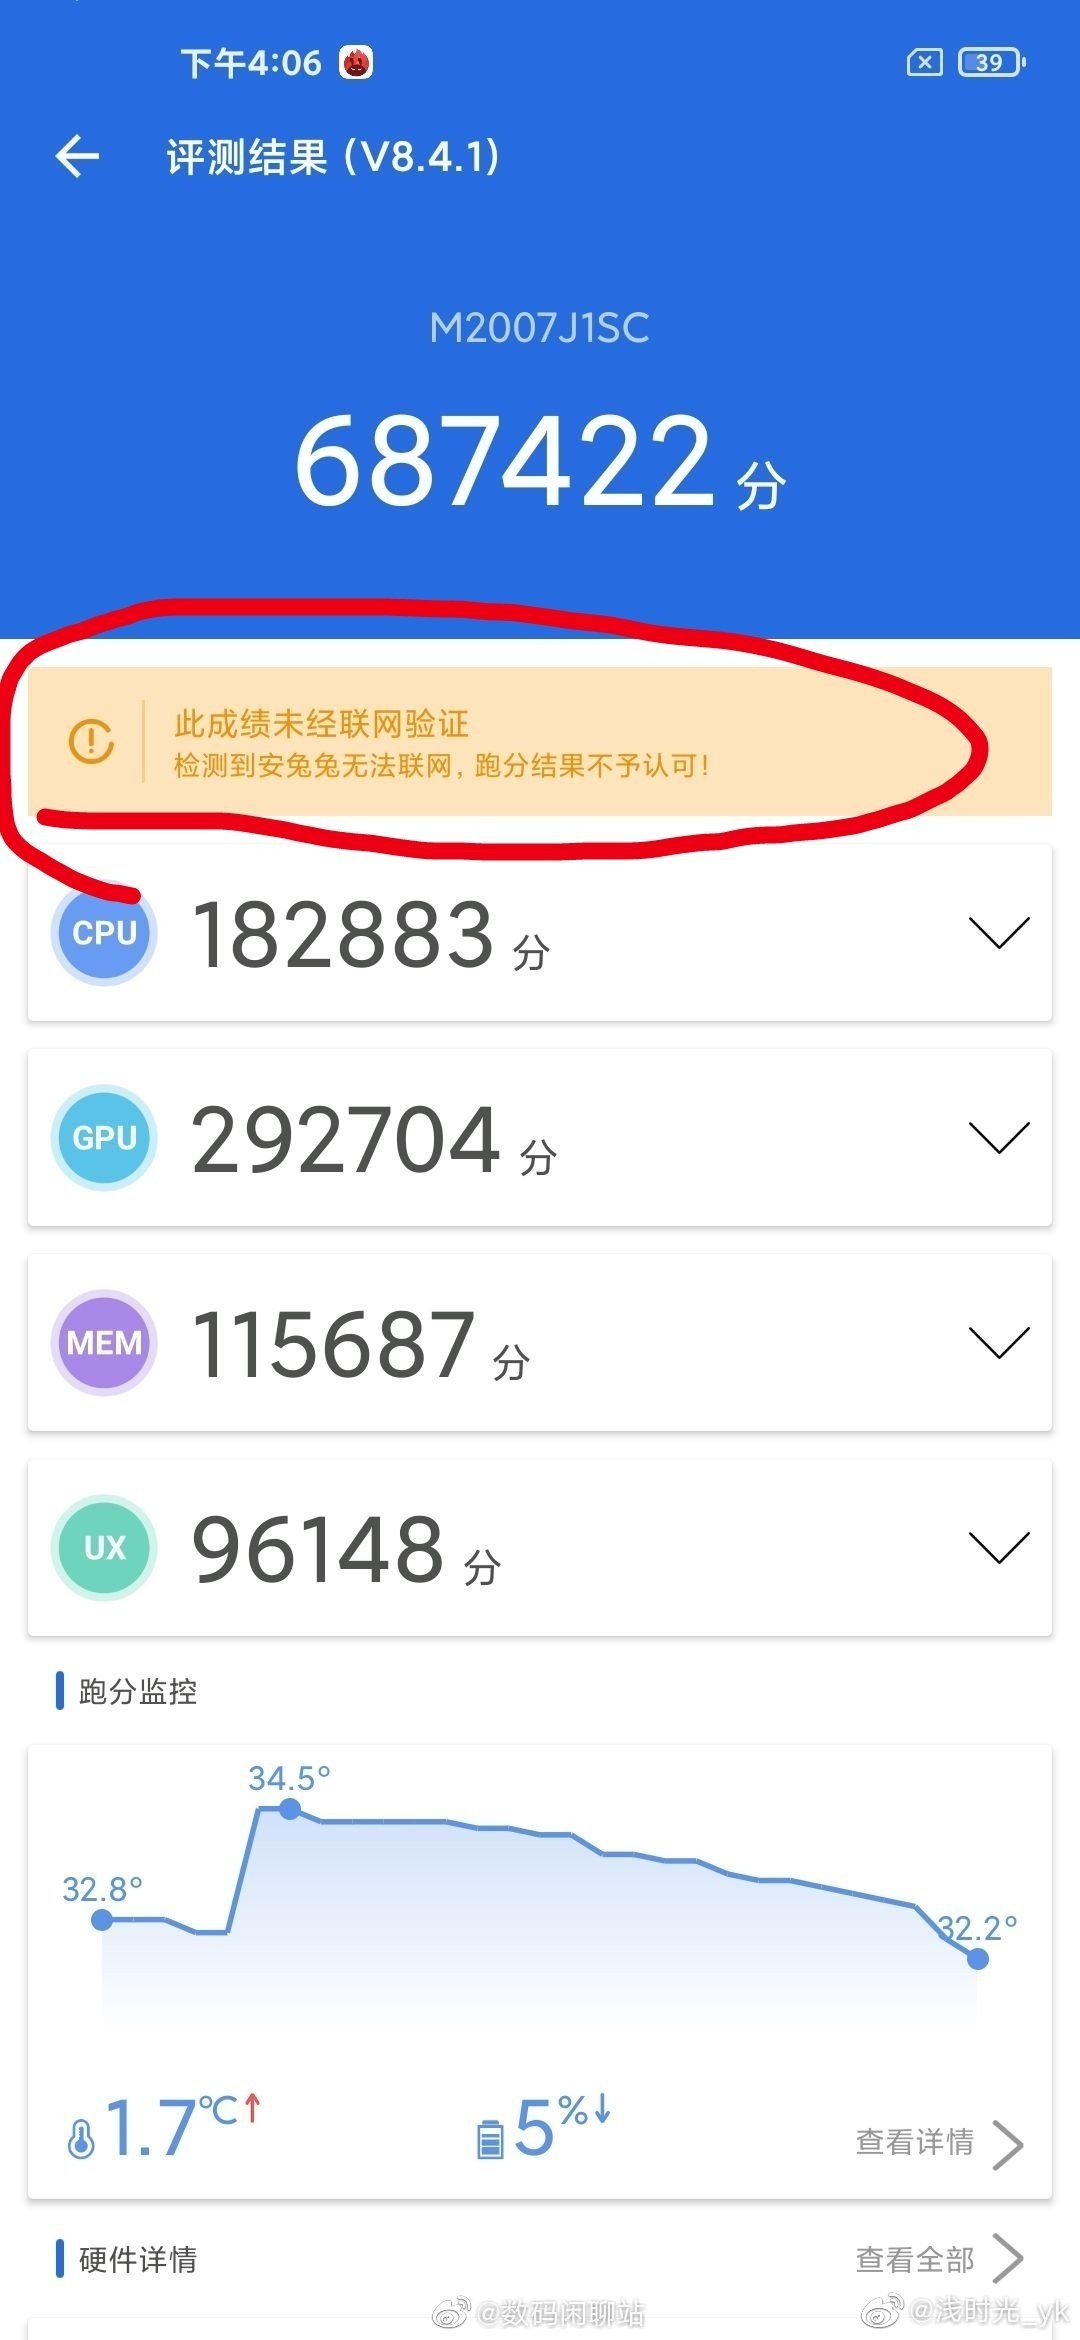 Неизвестный смартфон Xiaomi побил все рекорды в бенчмарке Antutu. А у него даже не самый мощный процессор